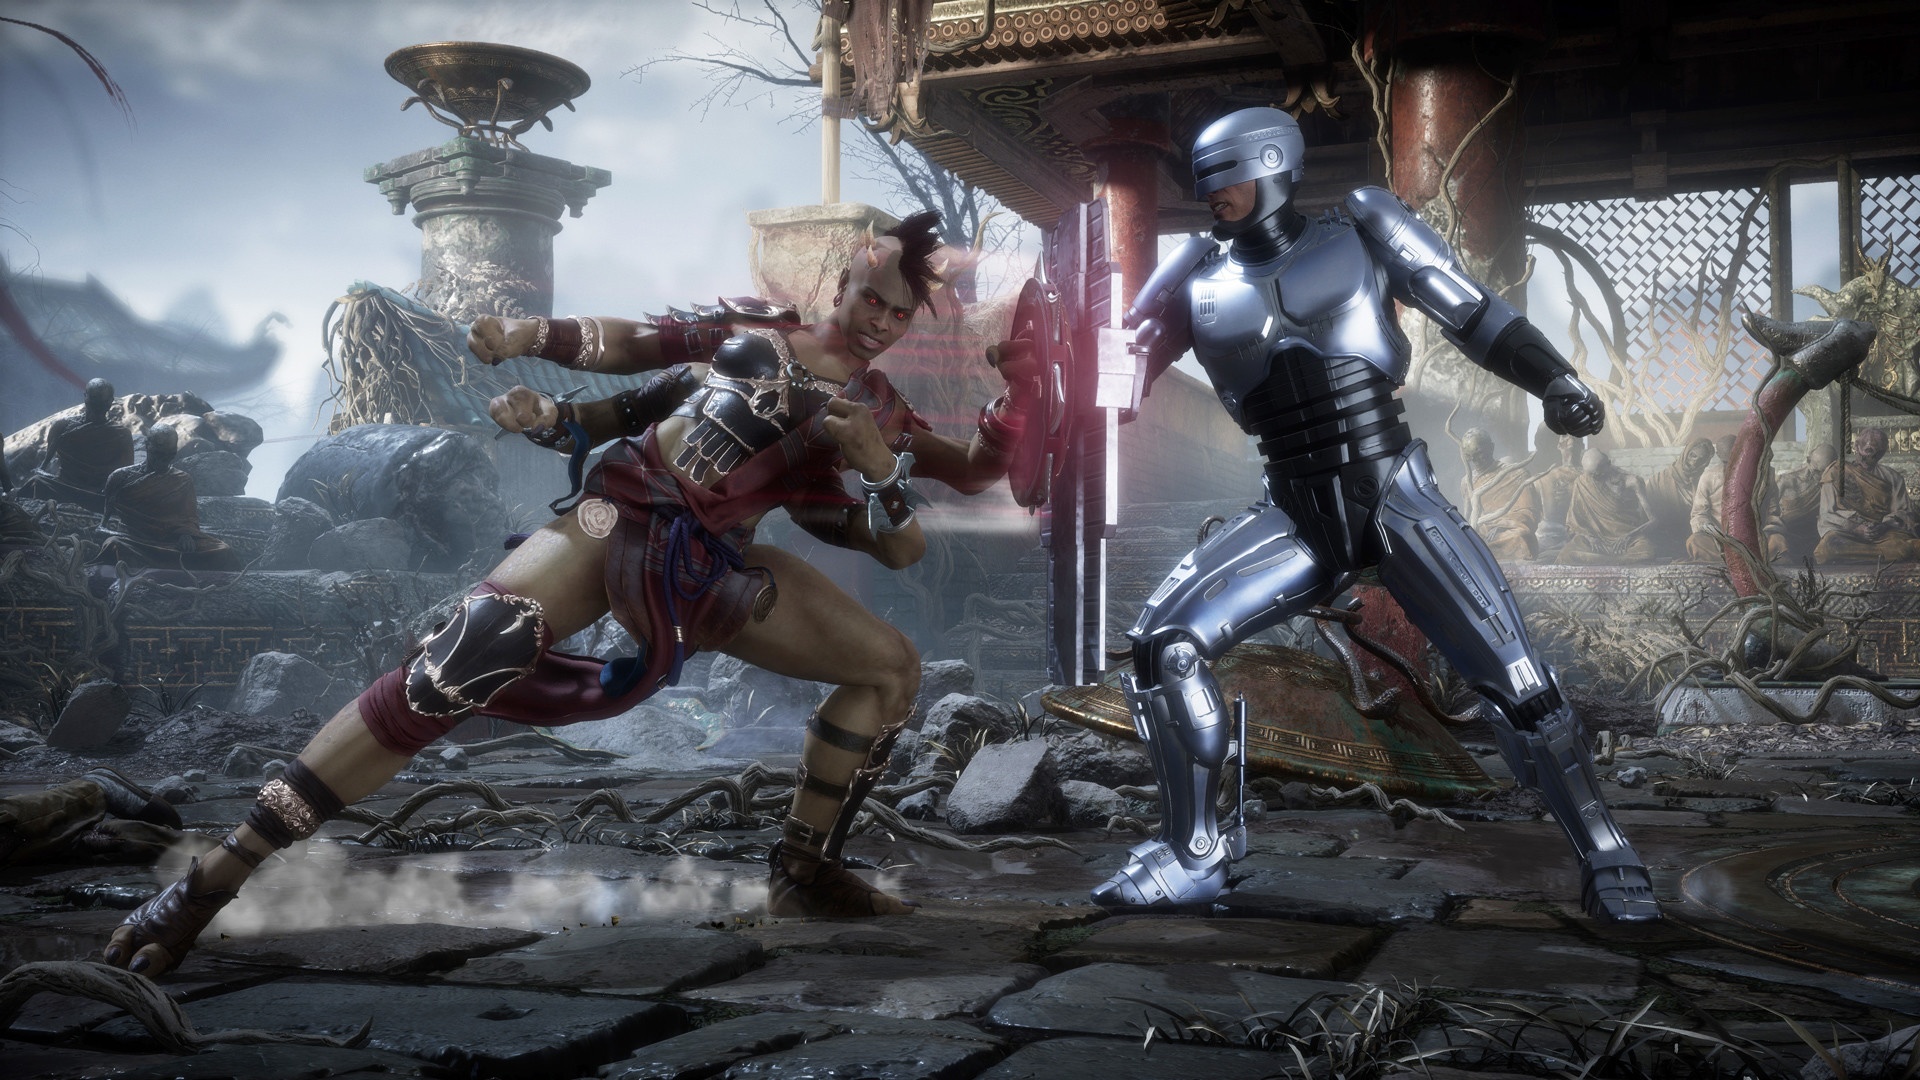 Mortal Kombat 11: Aftermath ADD-ON  Цифровая версия - фото